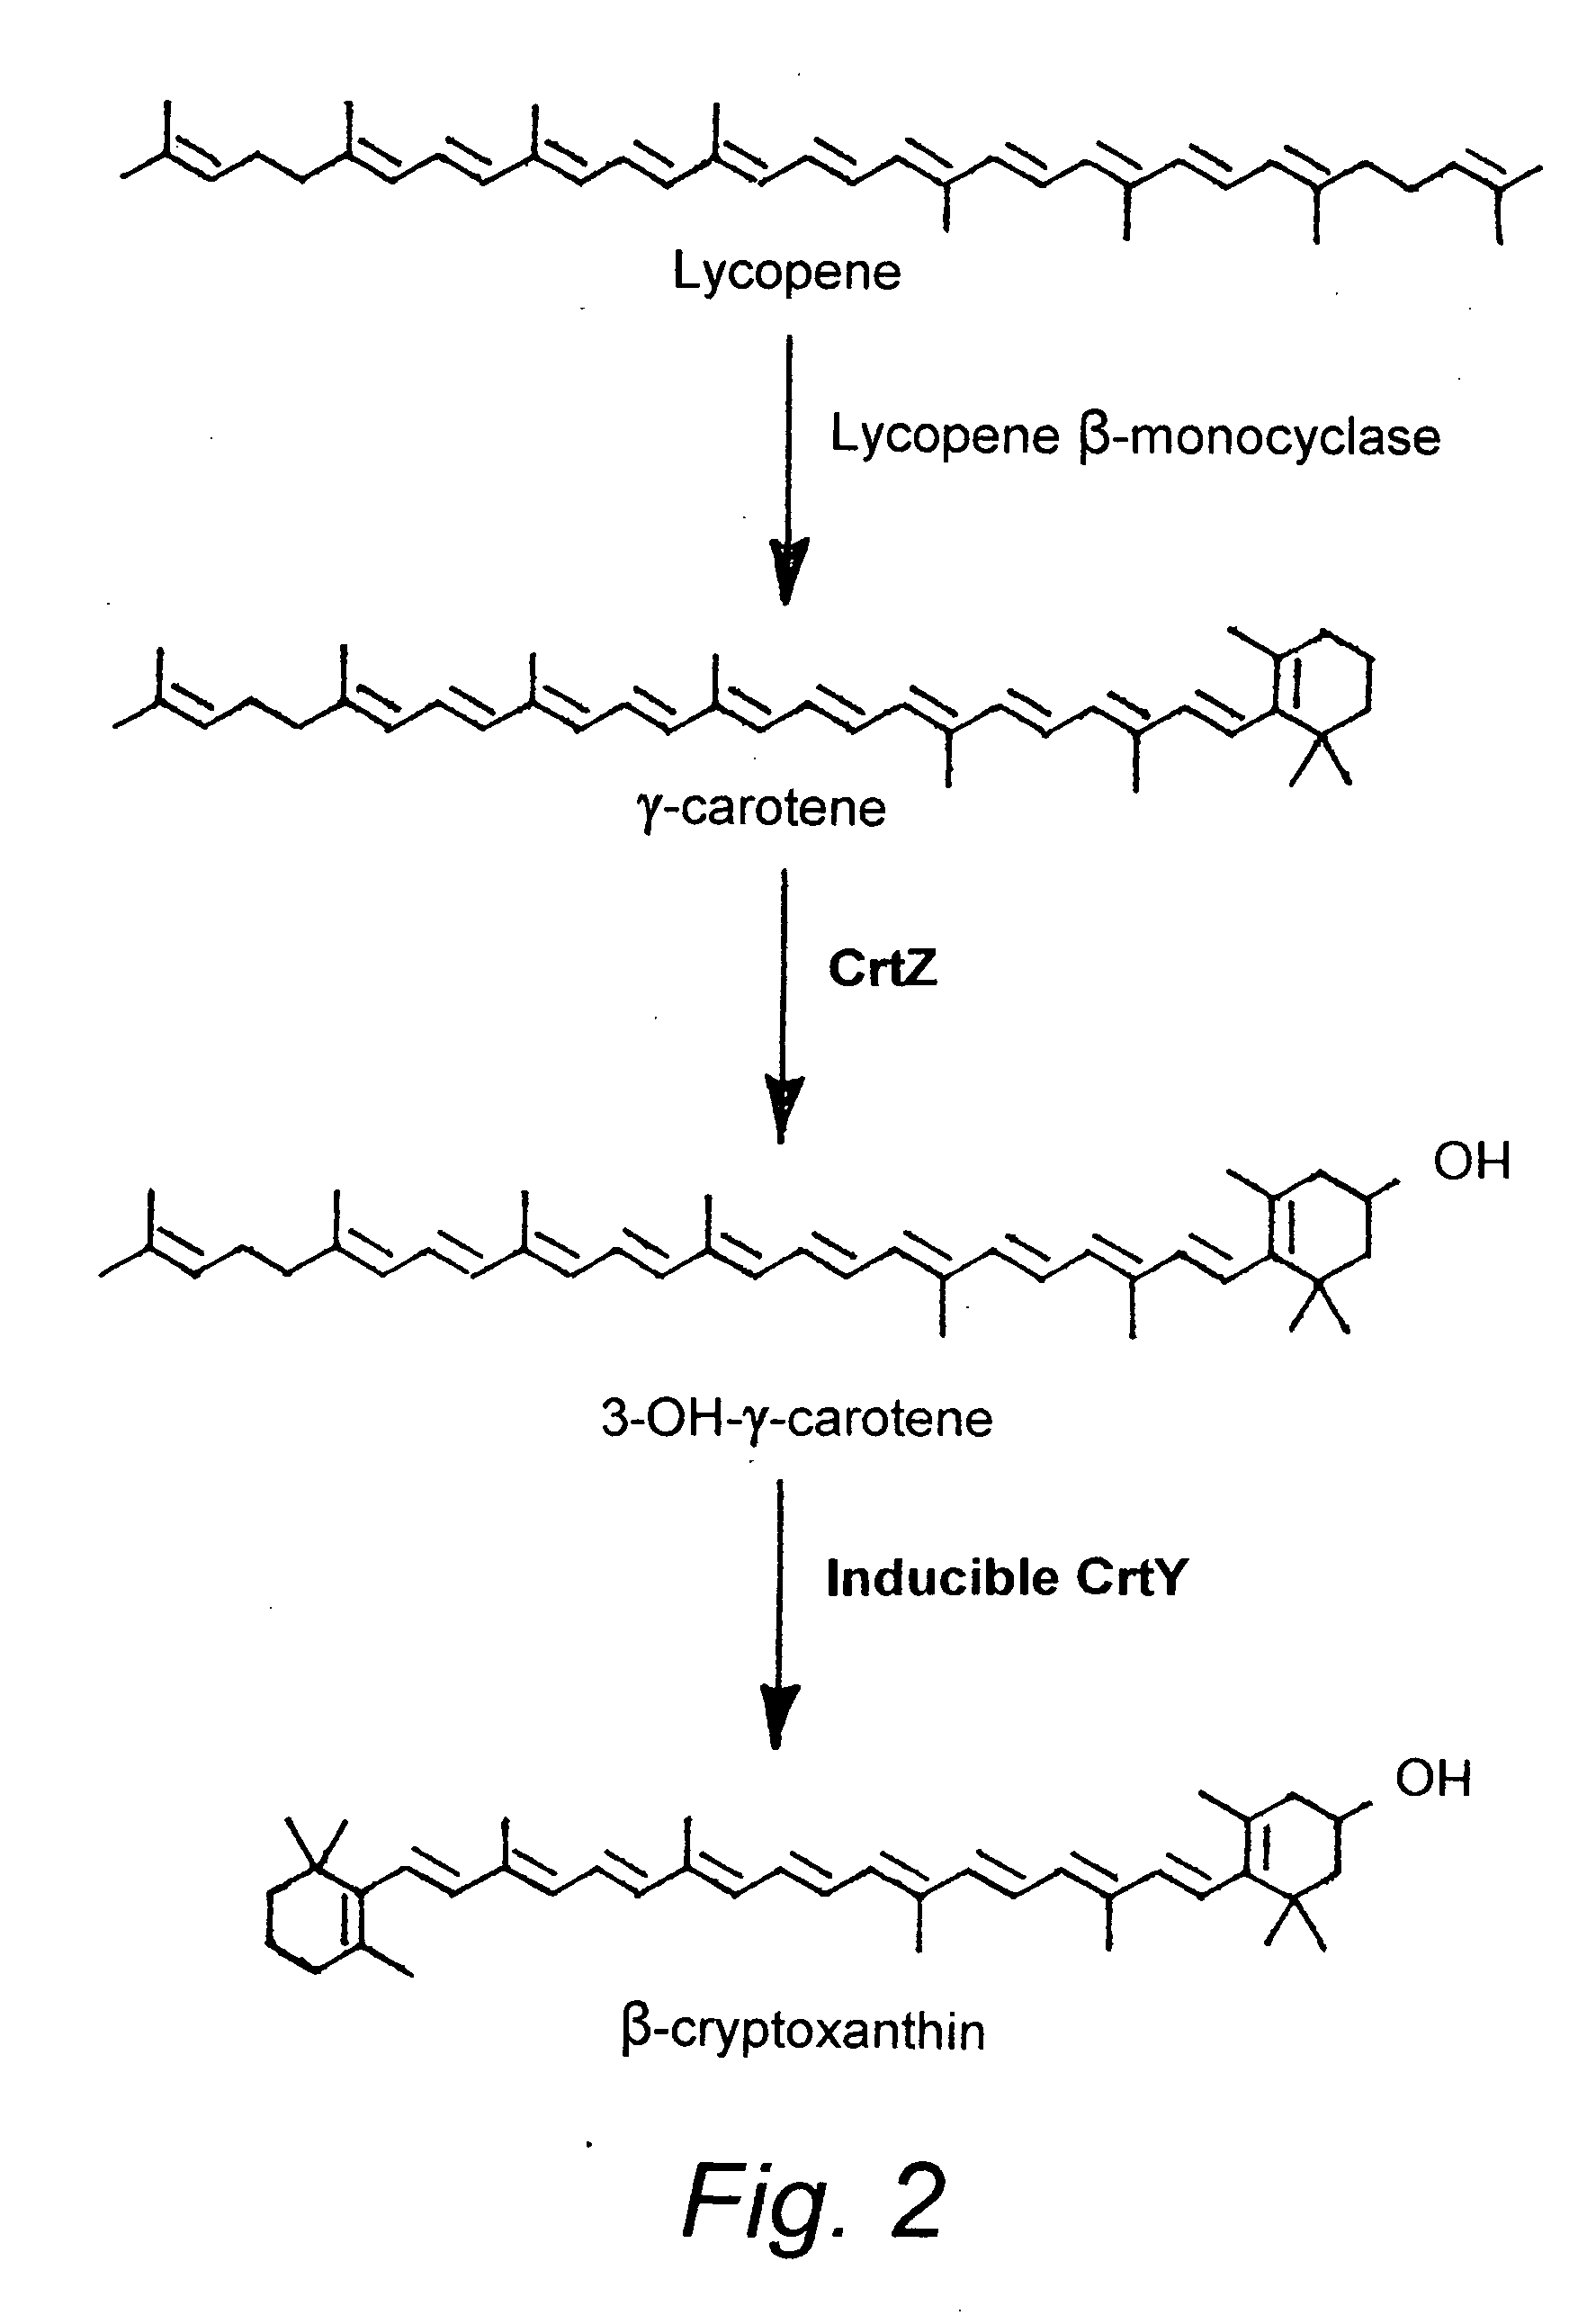 Beta-cryptoxanthin production using a novel lycopene beta-monocyclase gene